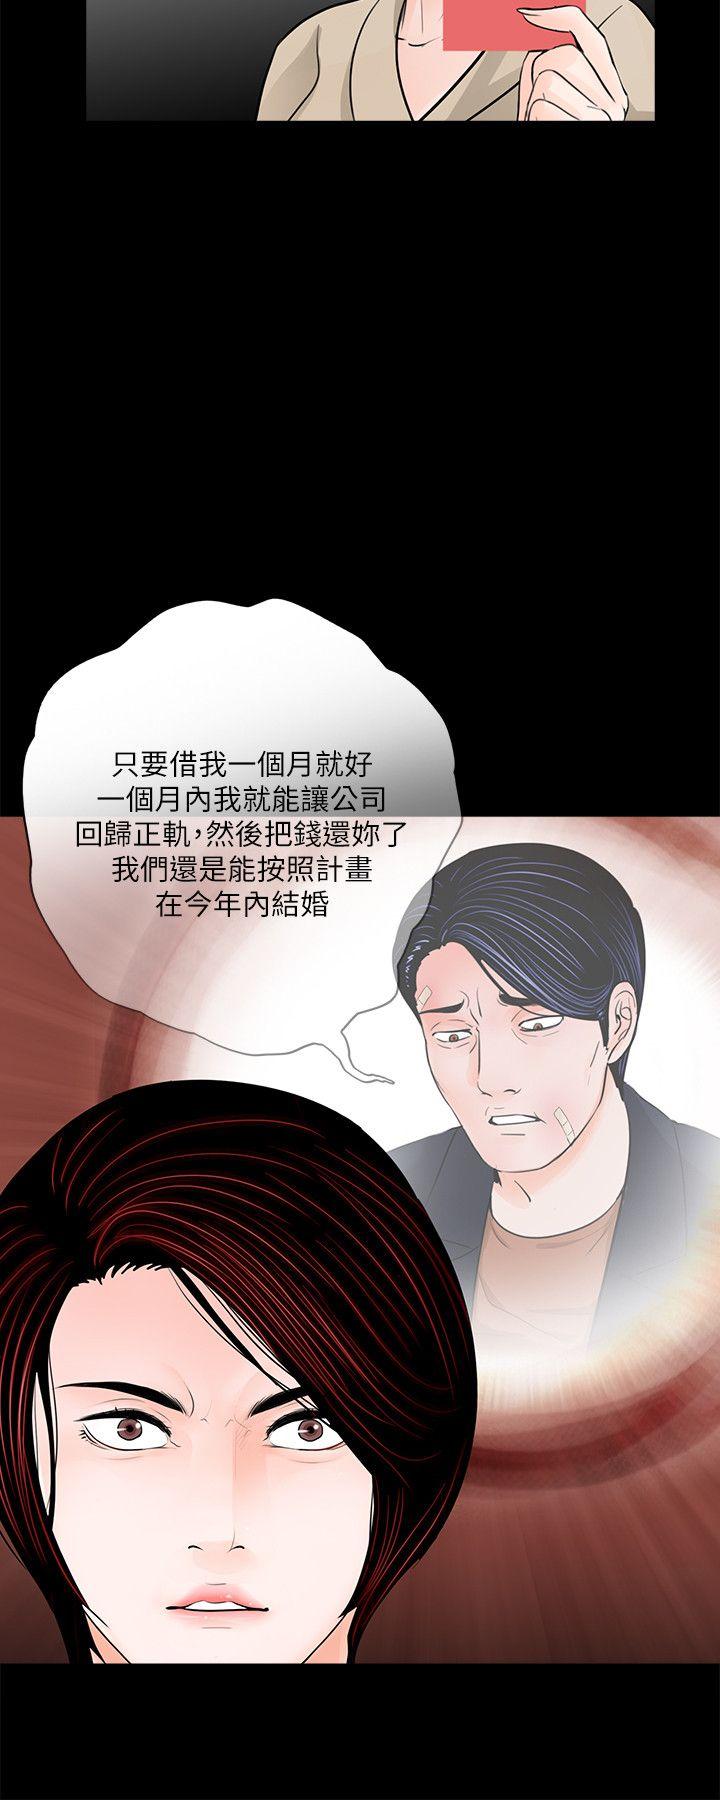 韩国污漫画 夢魘 第46话-真书的未婚夫(04) 18